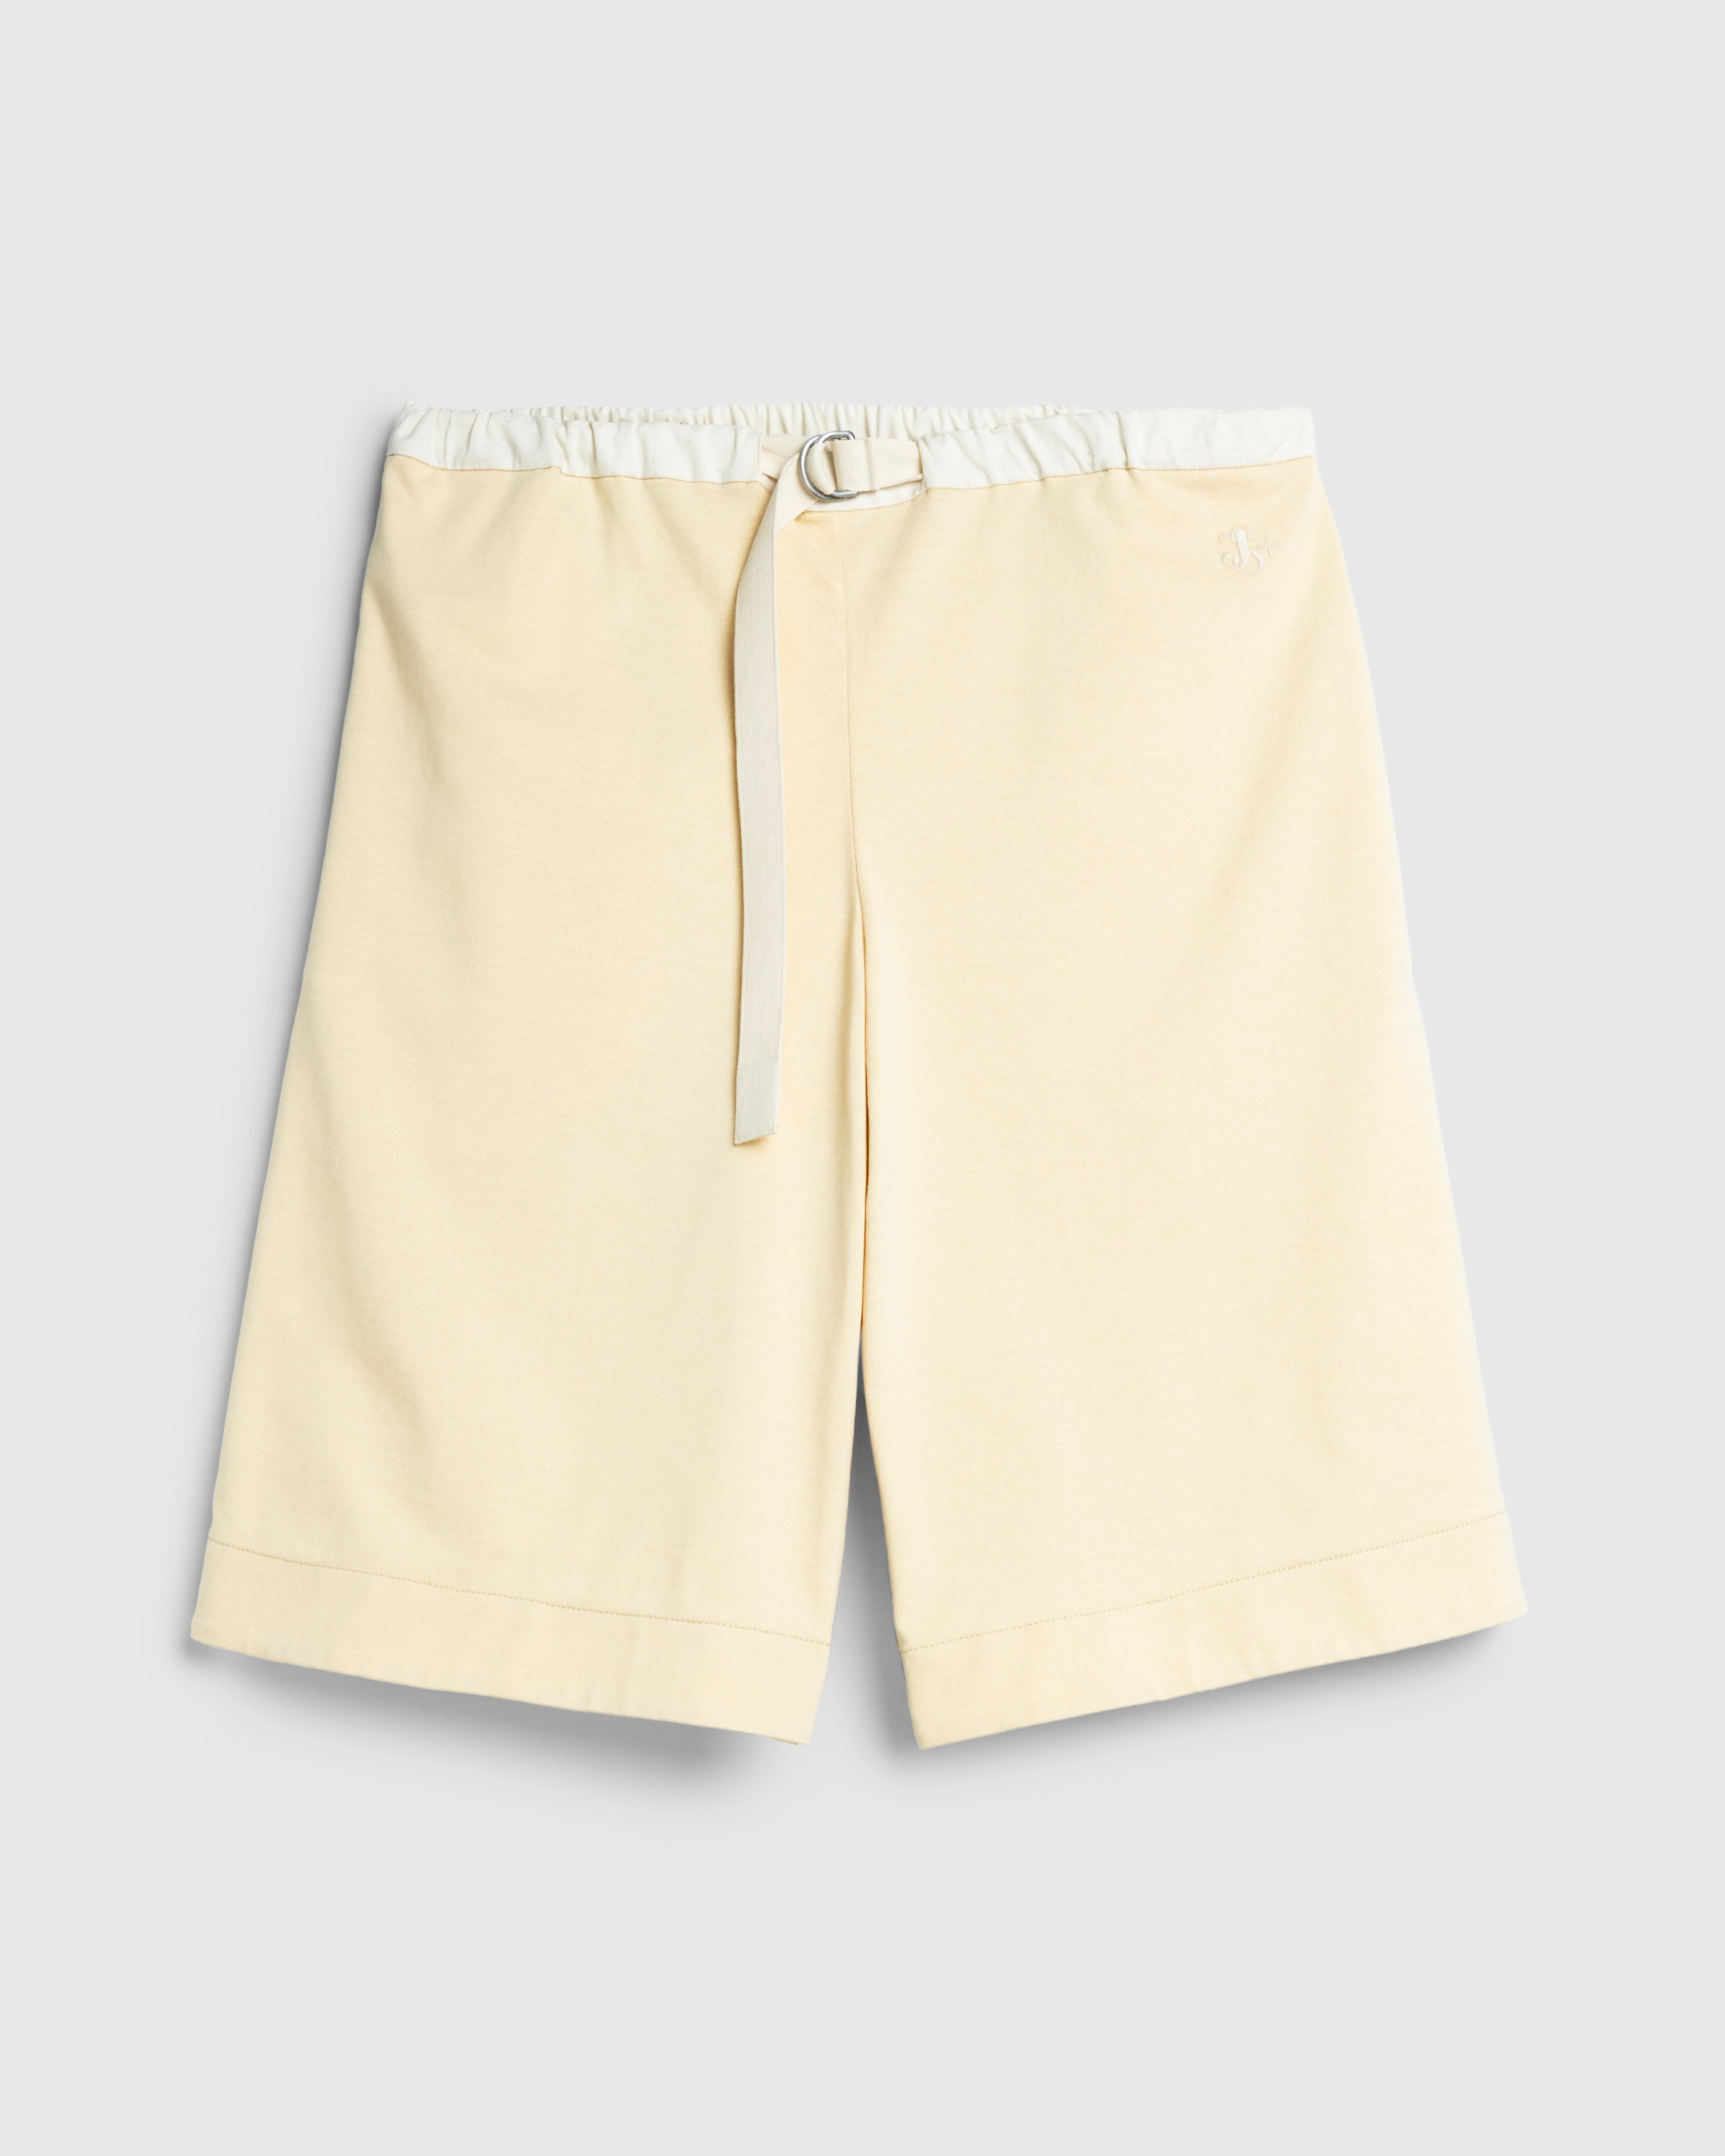 Jil Sander - Shorts - Clothing - Yellow - Image 1